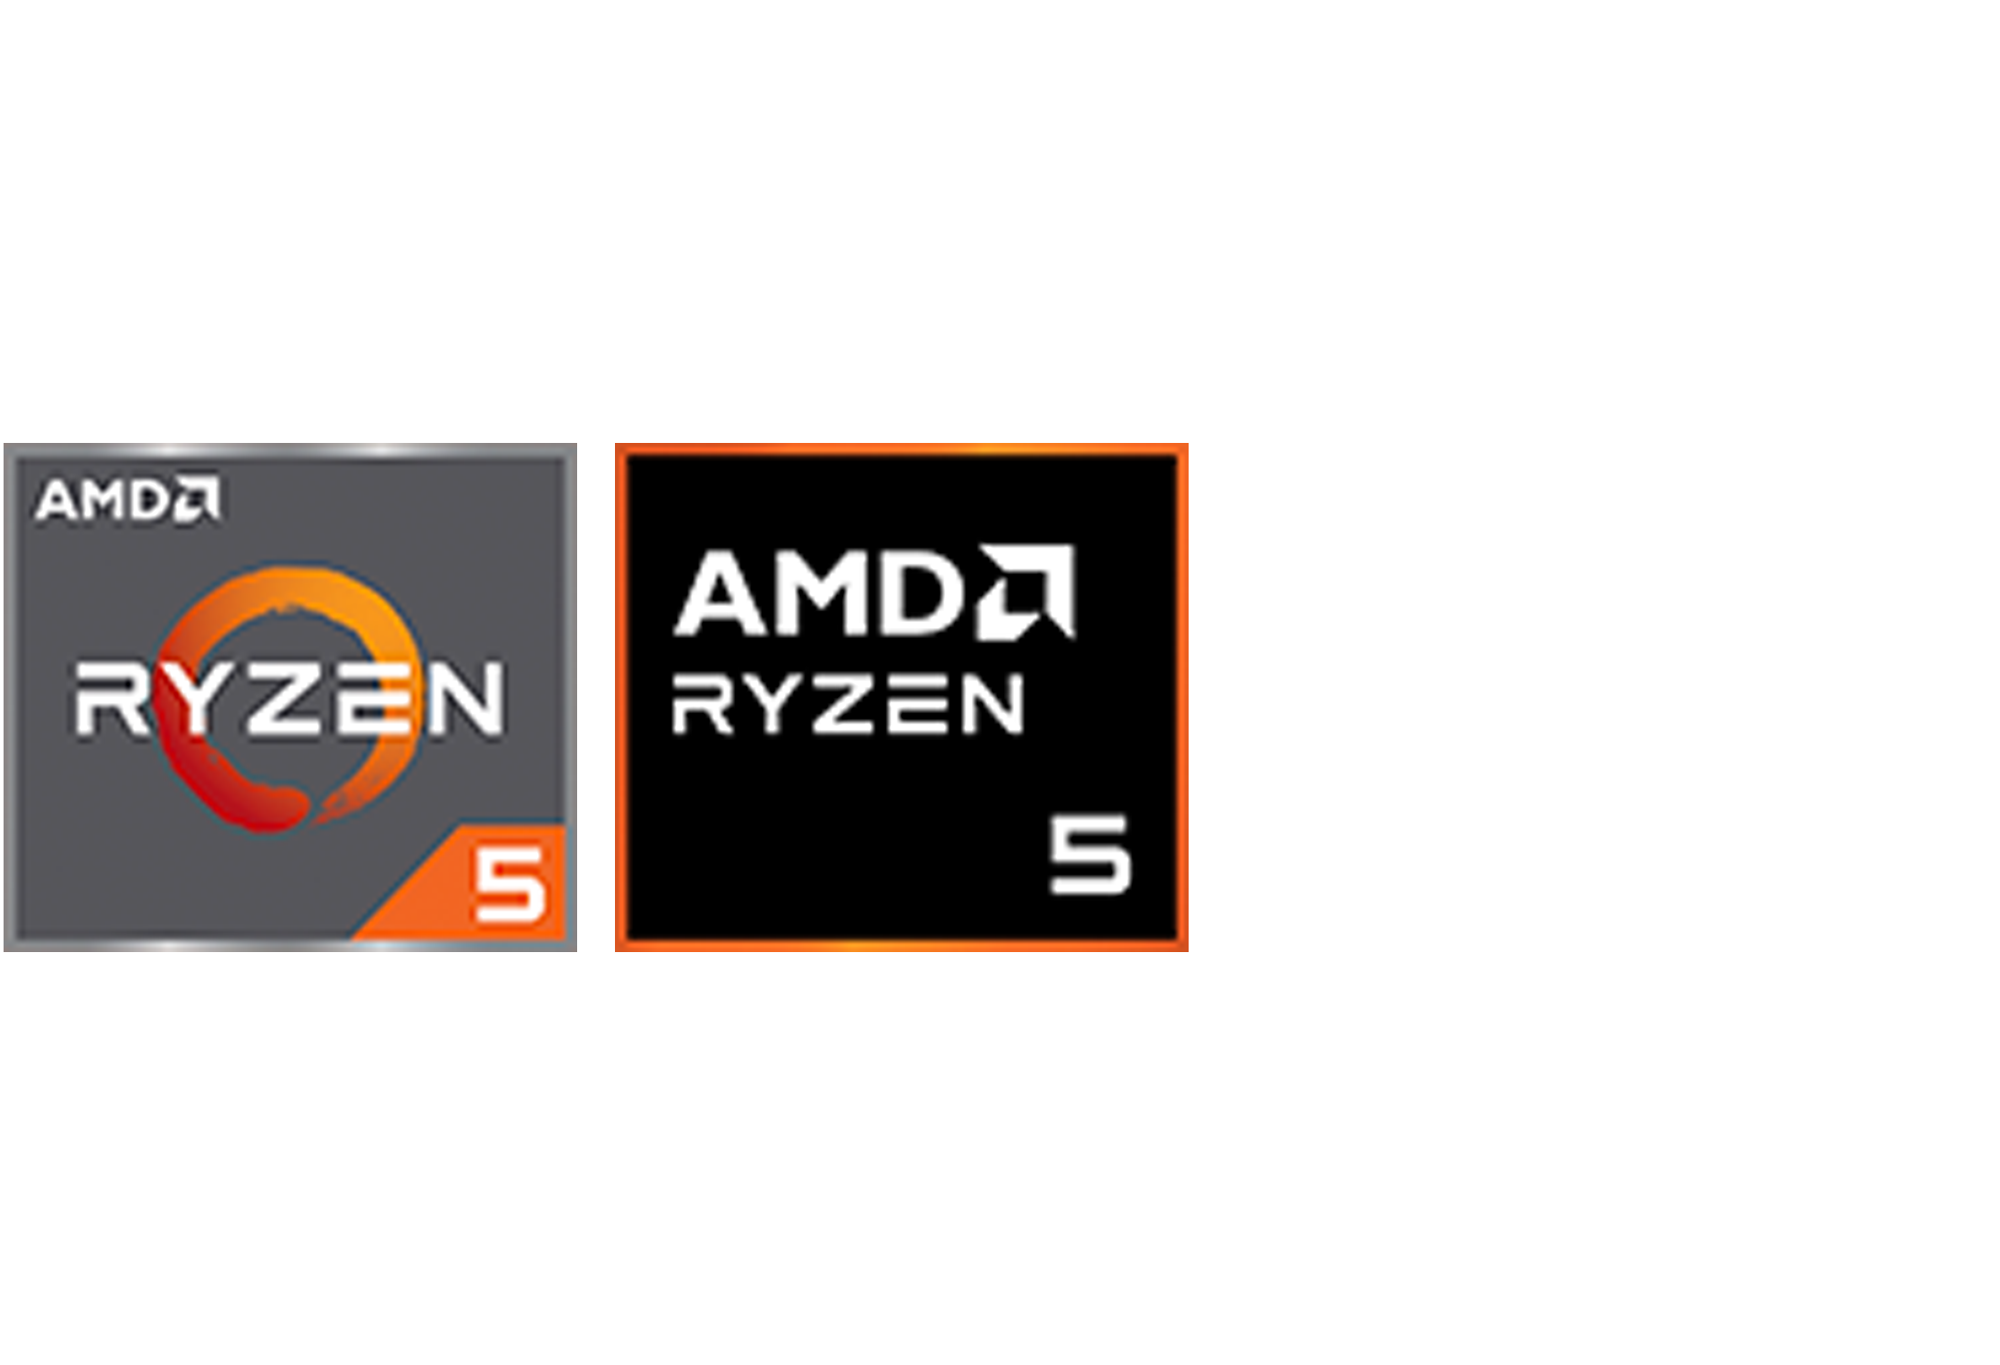 AMD Ryzen5 logoer